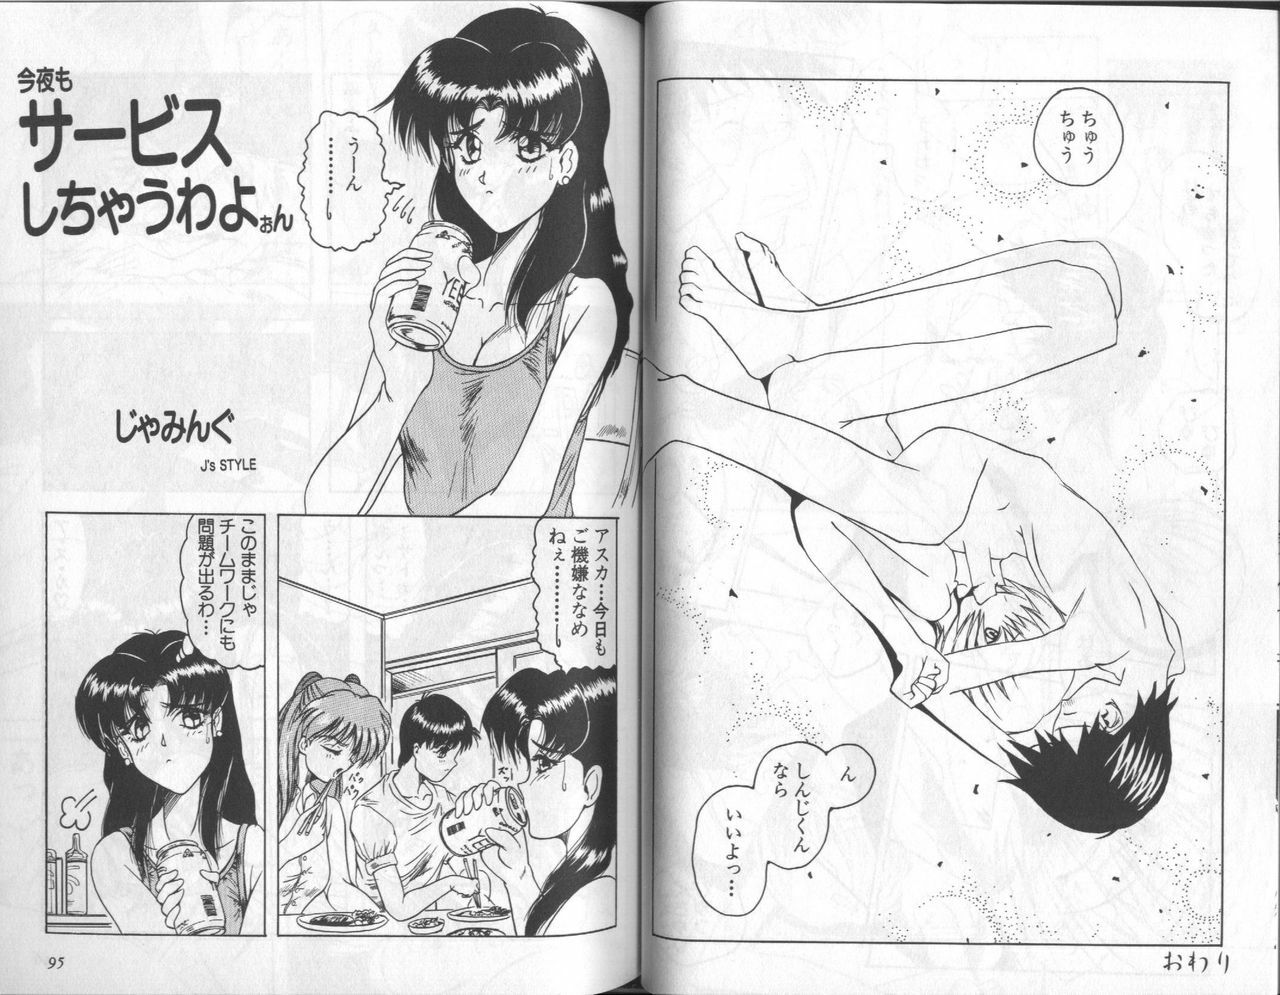 [Anthology] Shitsurakuen 6 | Paradise Lost 6 (Neon Genesis Evangelion) page 49 full